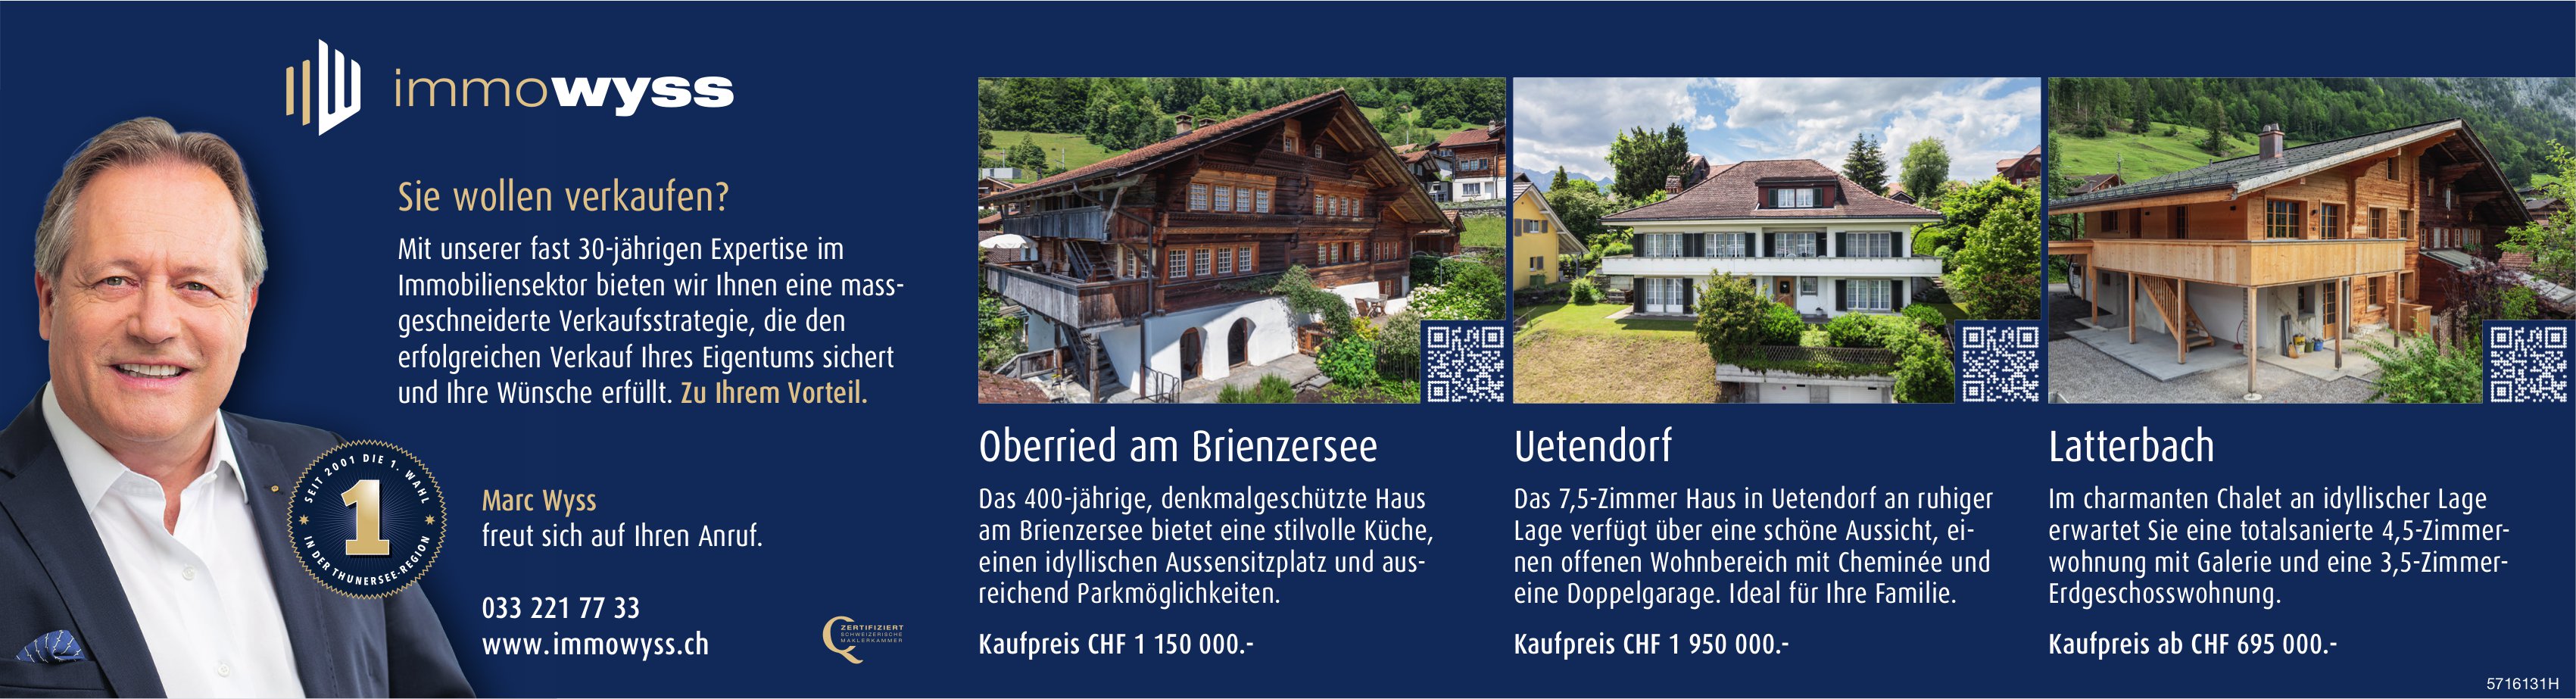 Immowyss  - Oberried am Brienzersee, Uetendorf,  Latterbach, zu verkaufen